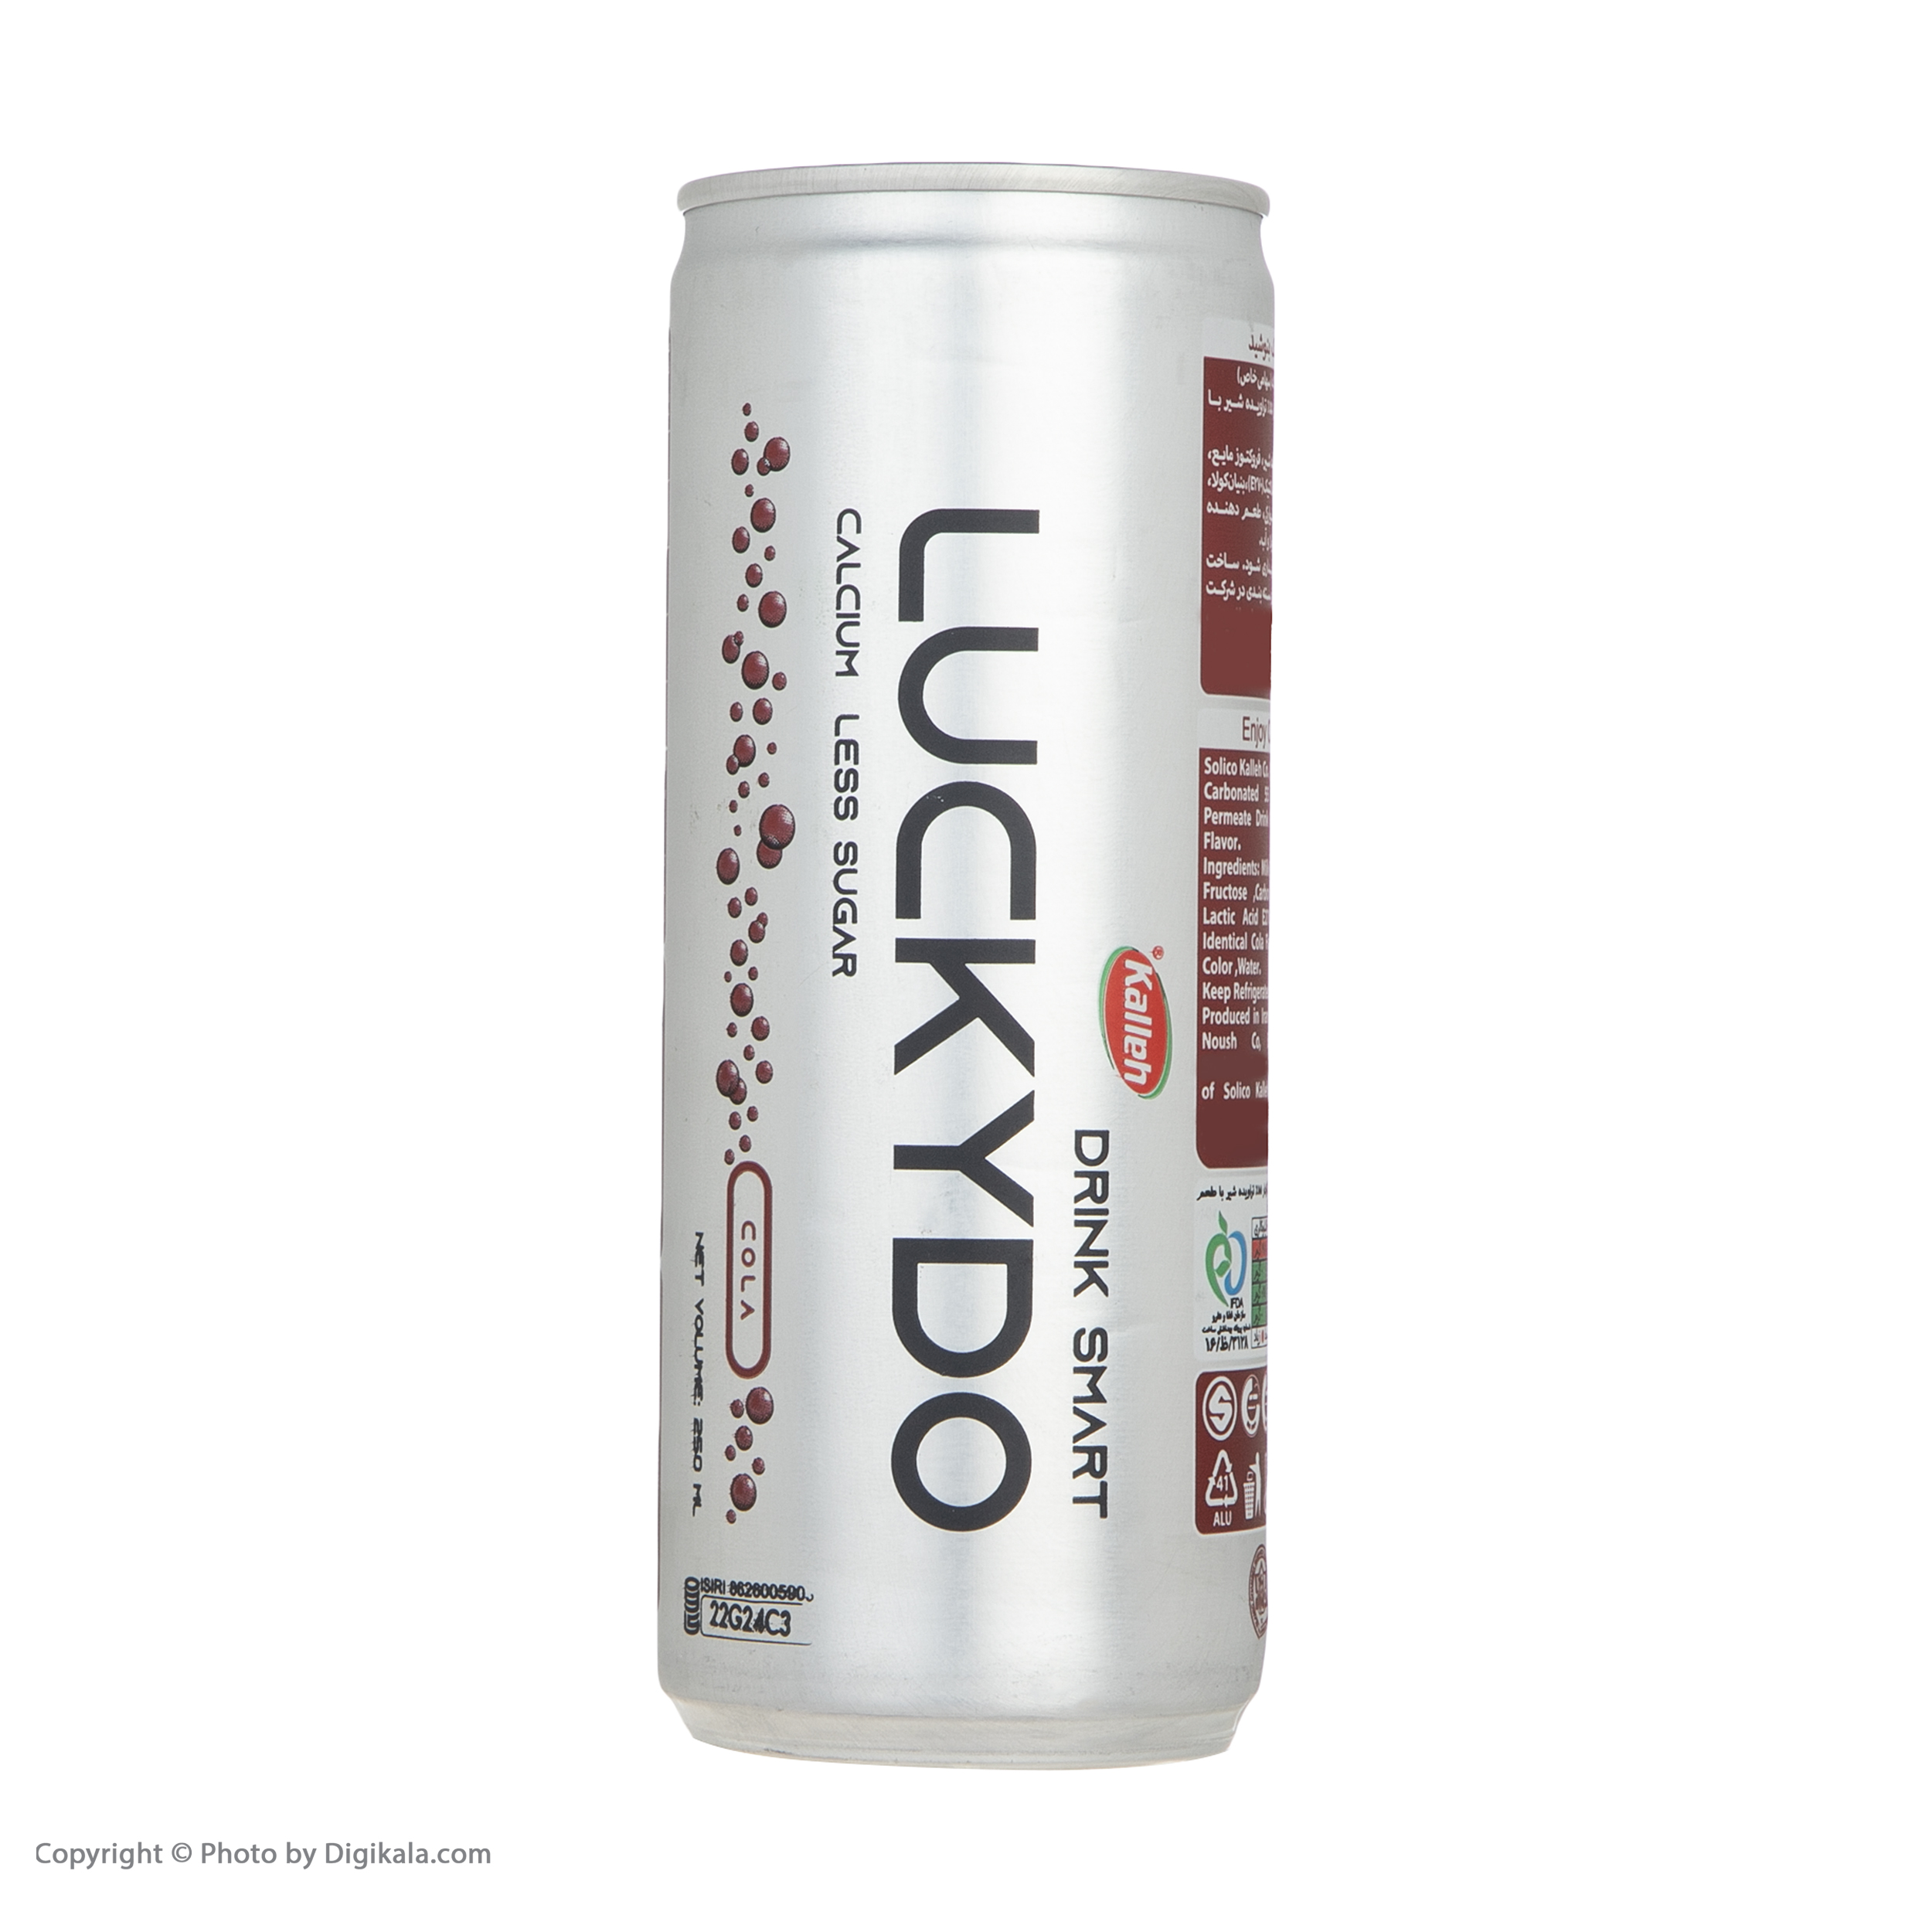 نوشیدنی لاکیدو با طعم کولا کاله - 250 میلی لیتر